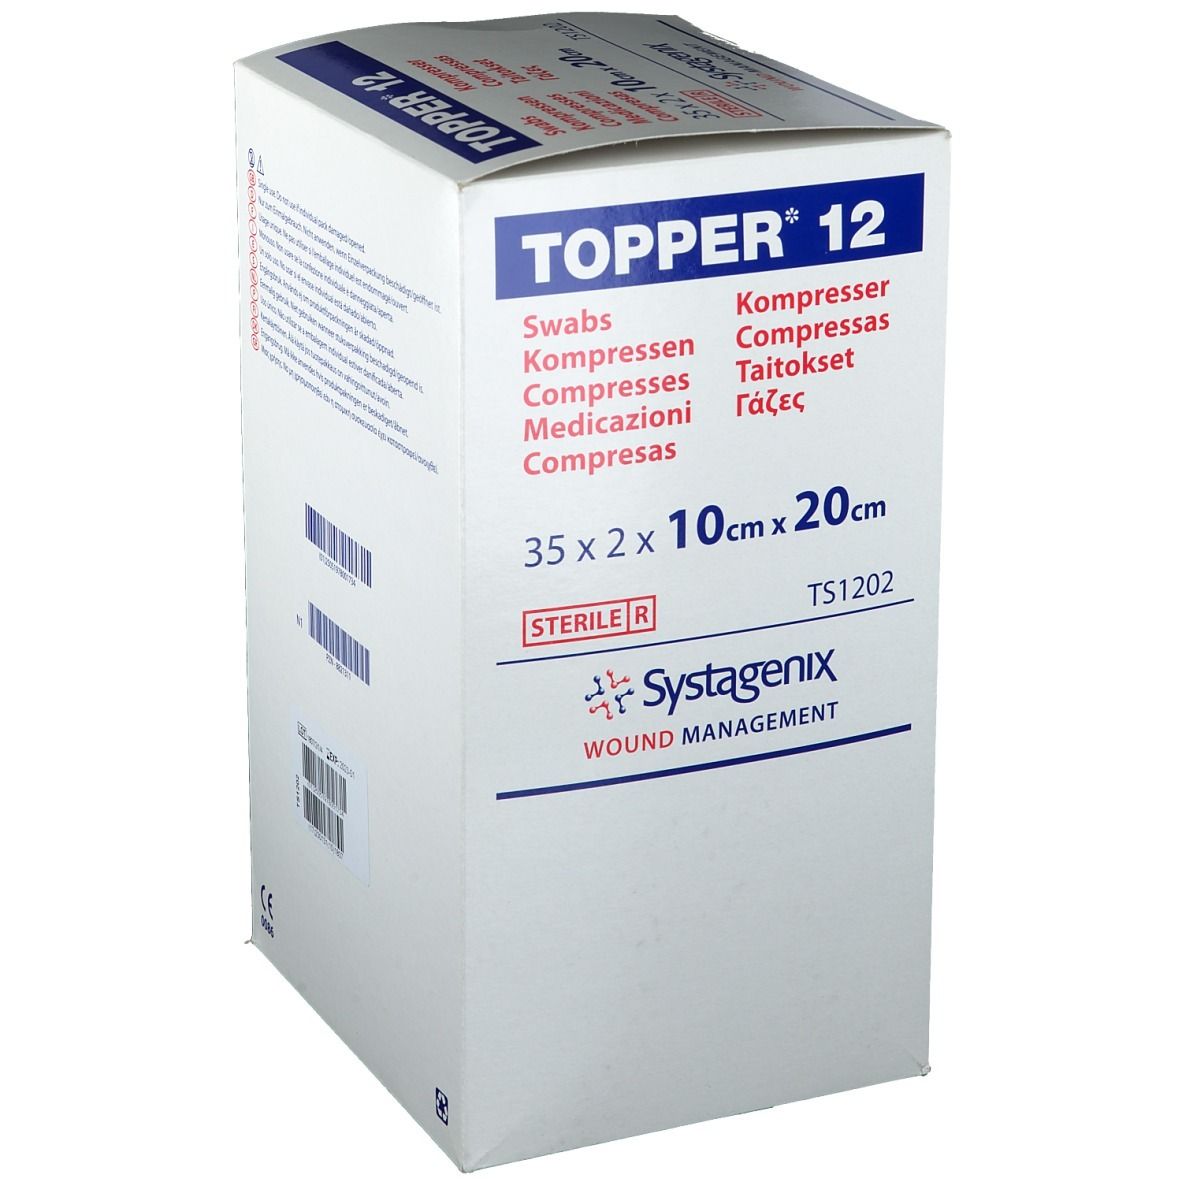 TOPPER® 12 Kompressen steril 10 x 20 cm